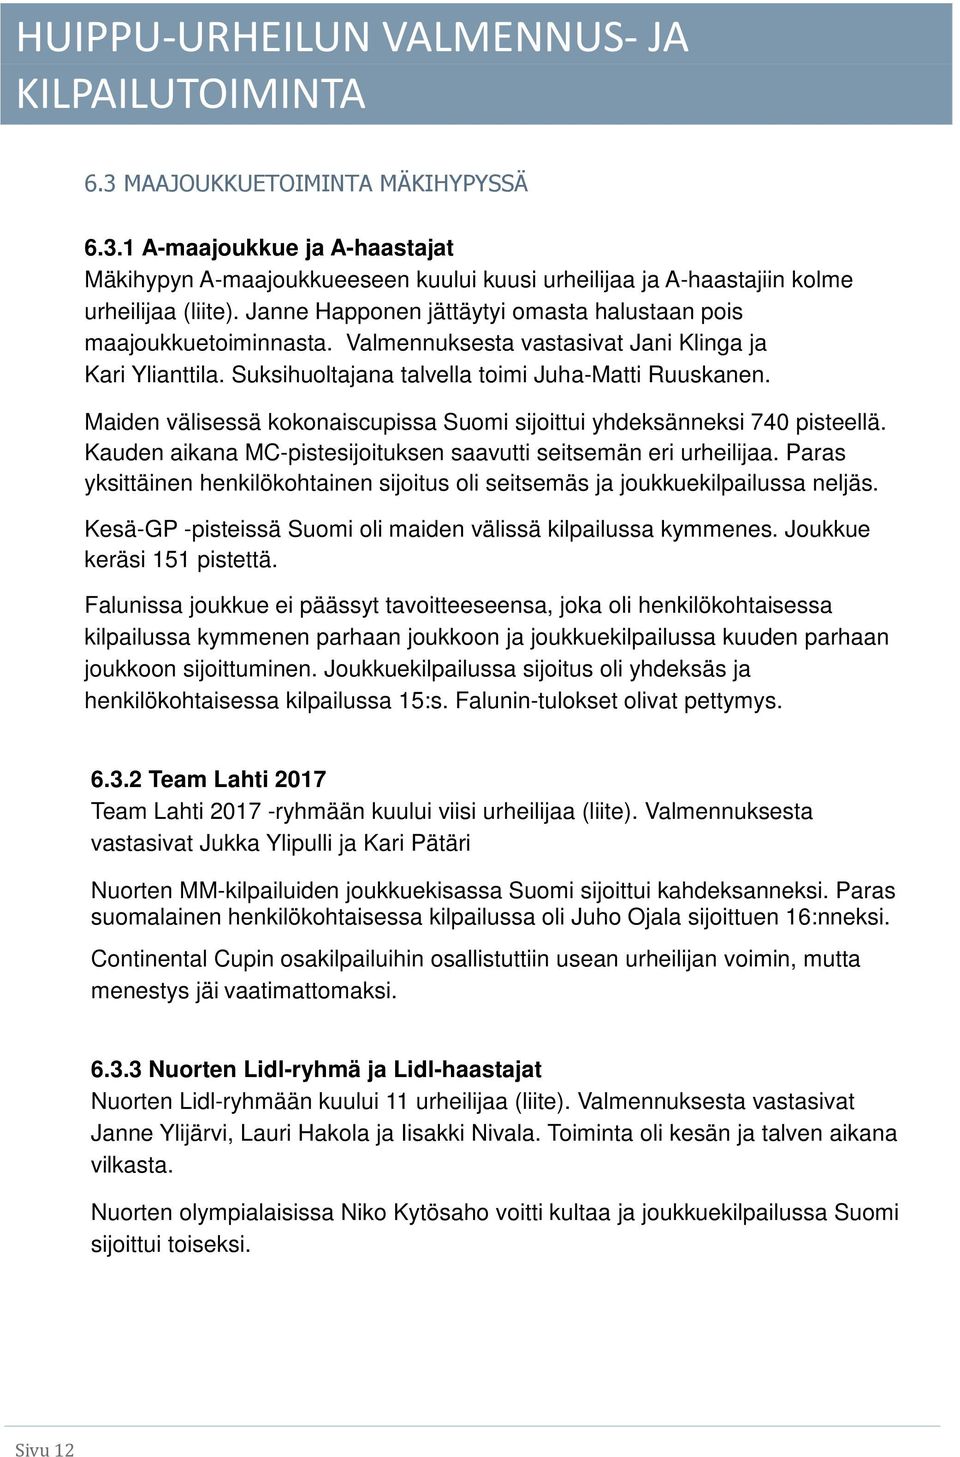 Maiden välisessä kokonaiscupissa Suomi sijoittui yhdeksänneksi 740 pisteellä. Kauden aikana MC-pistesijoituksen saavutti seitsemän eri urheilijaa.